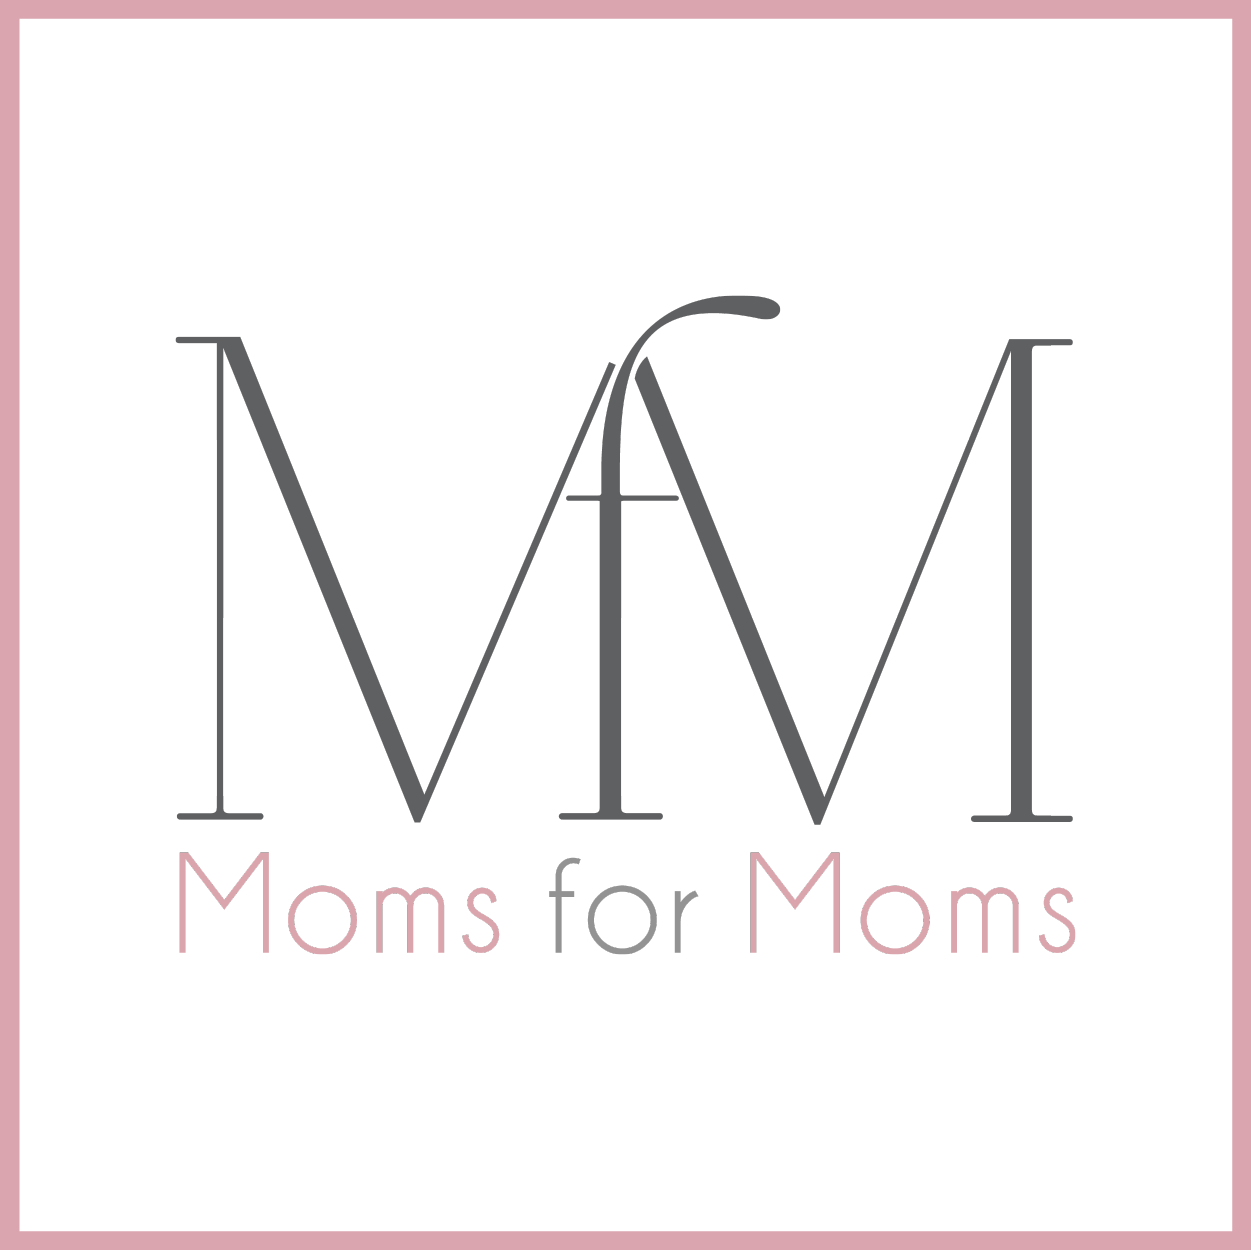 CHARITY SPOTLIGHT: MOMS FOR MOMS